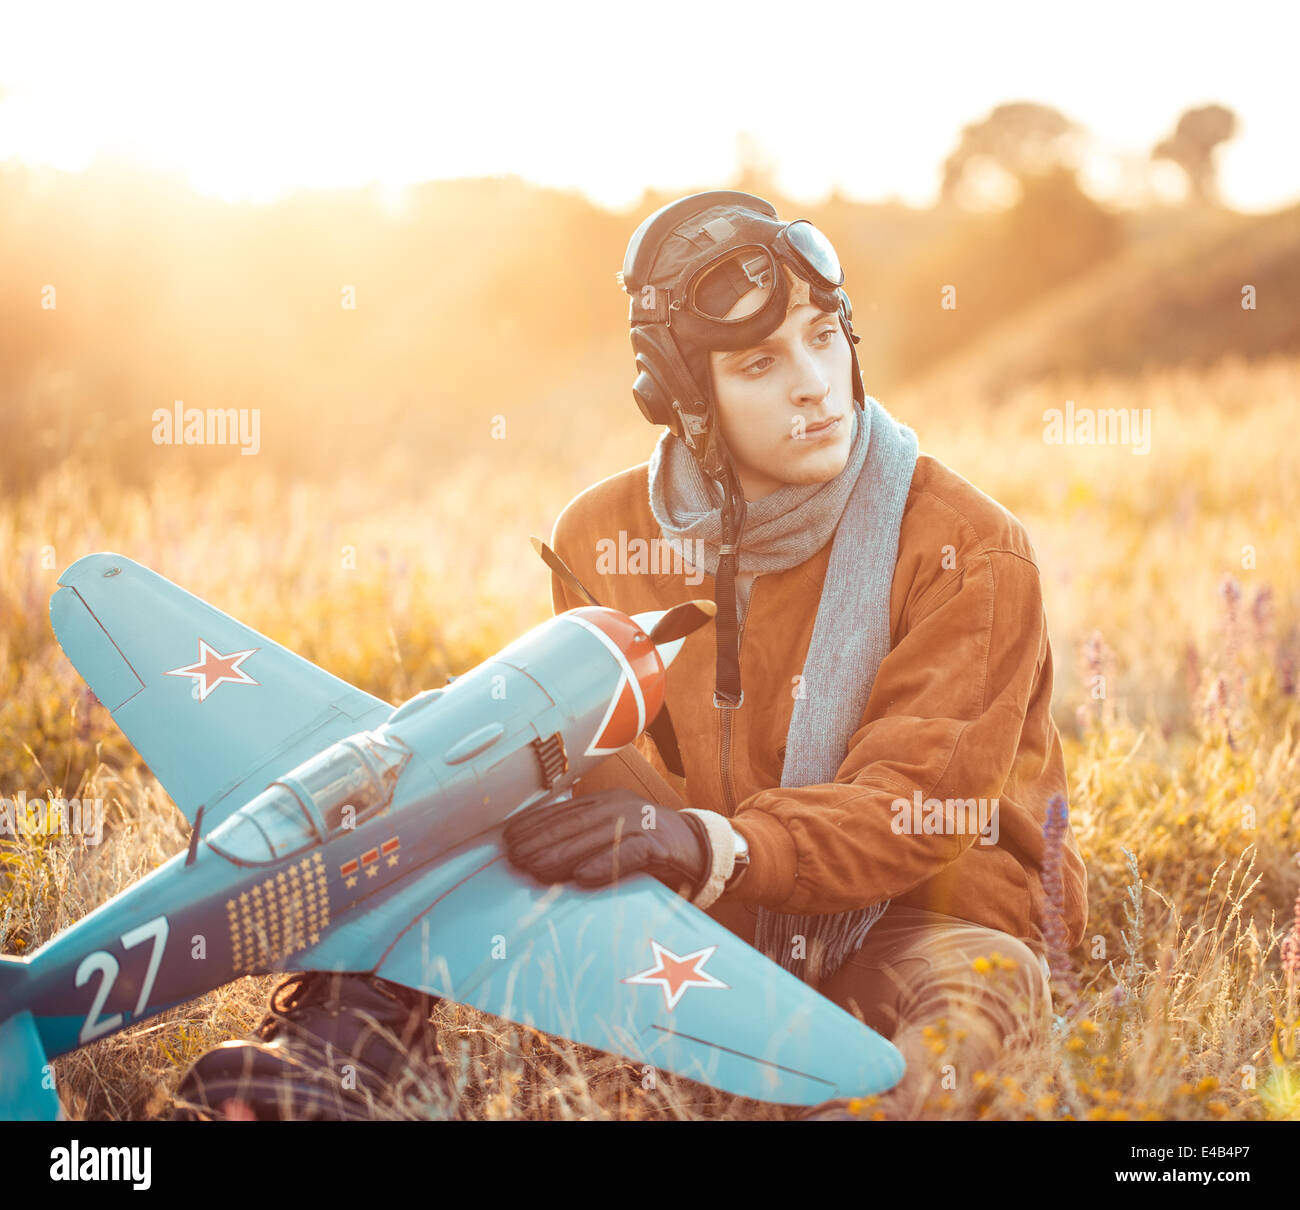 Junger Kerl in Vintage-Kleidung-Pilot mit einem Flugzeug Modell im freien Stockfoto